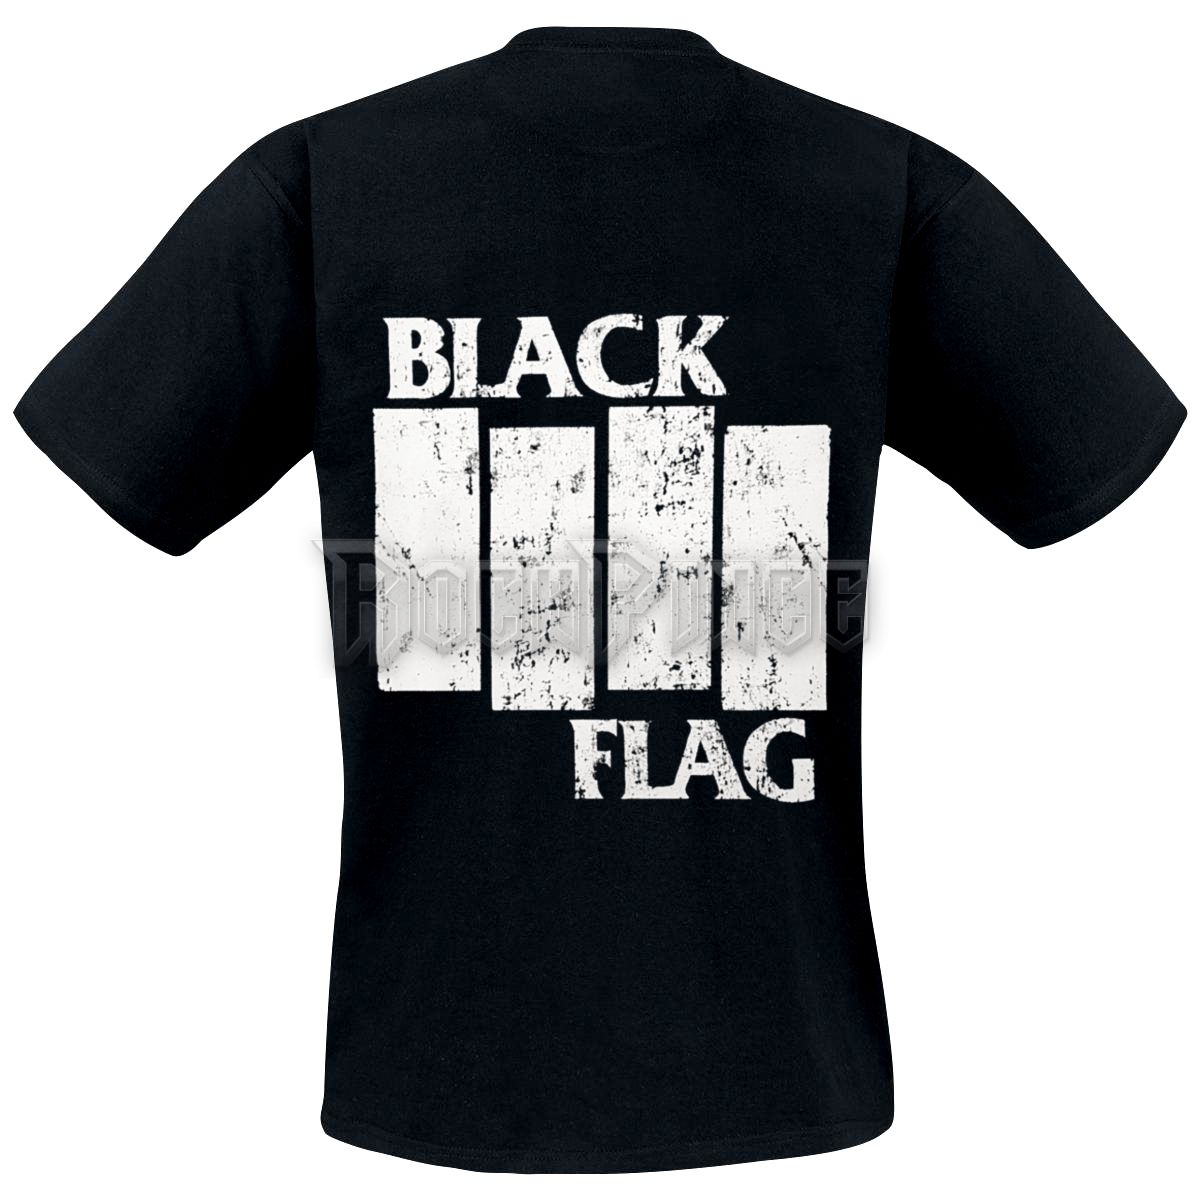 BLACK FLAG - LOGO - UNISEX PÓLÓ